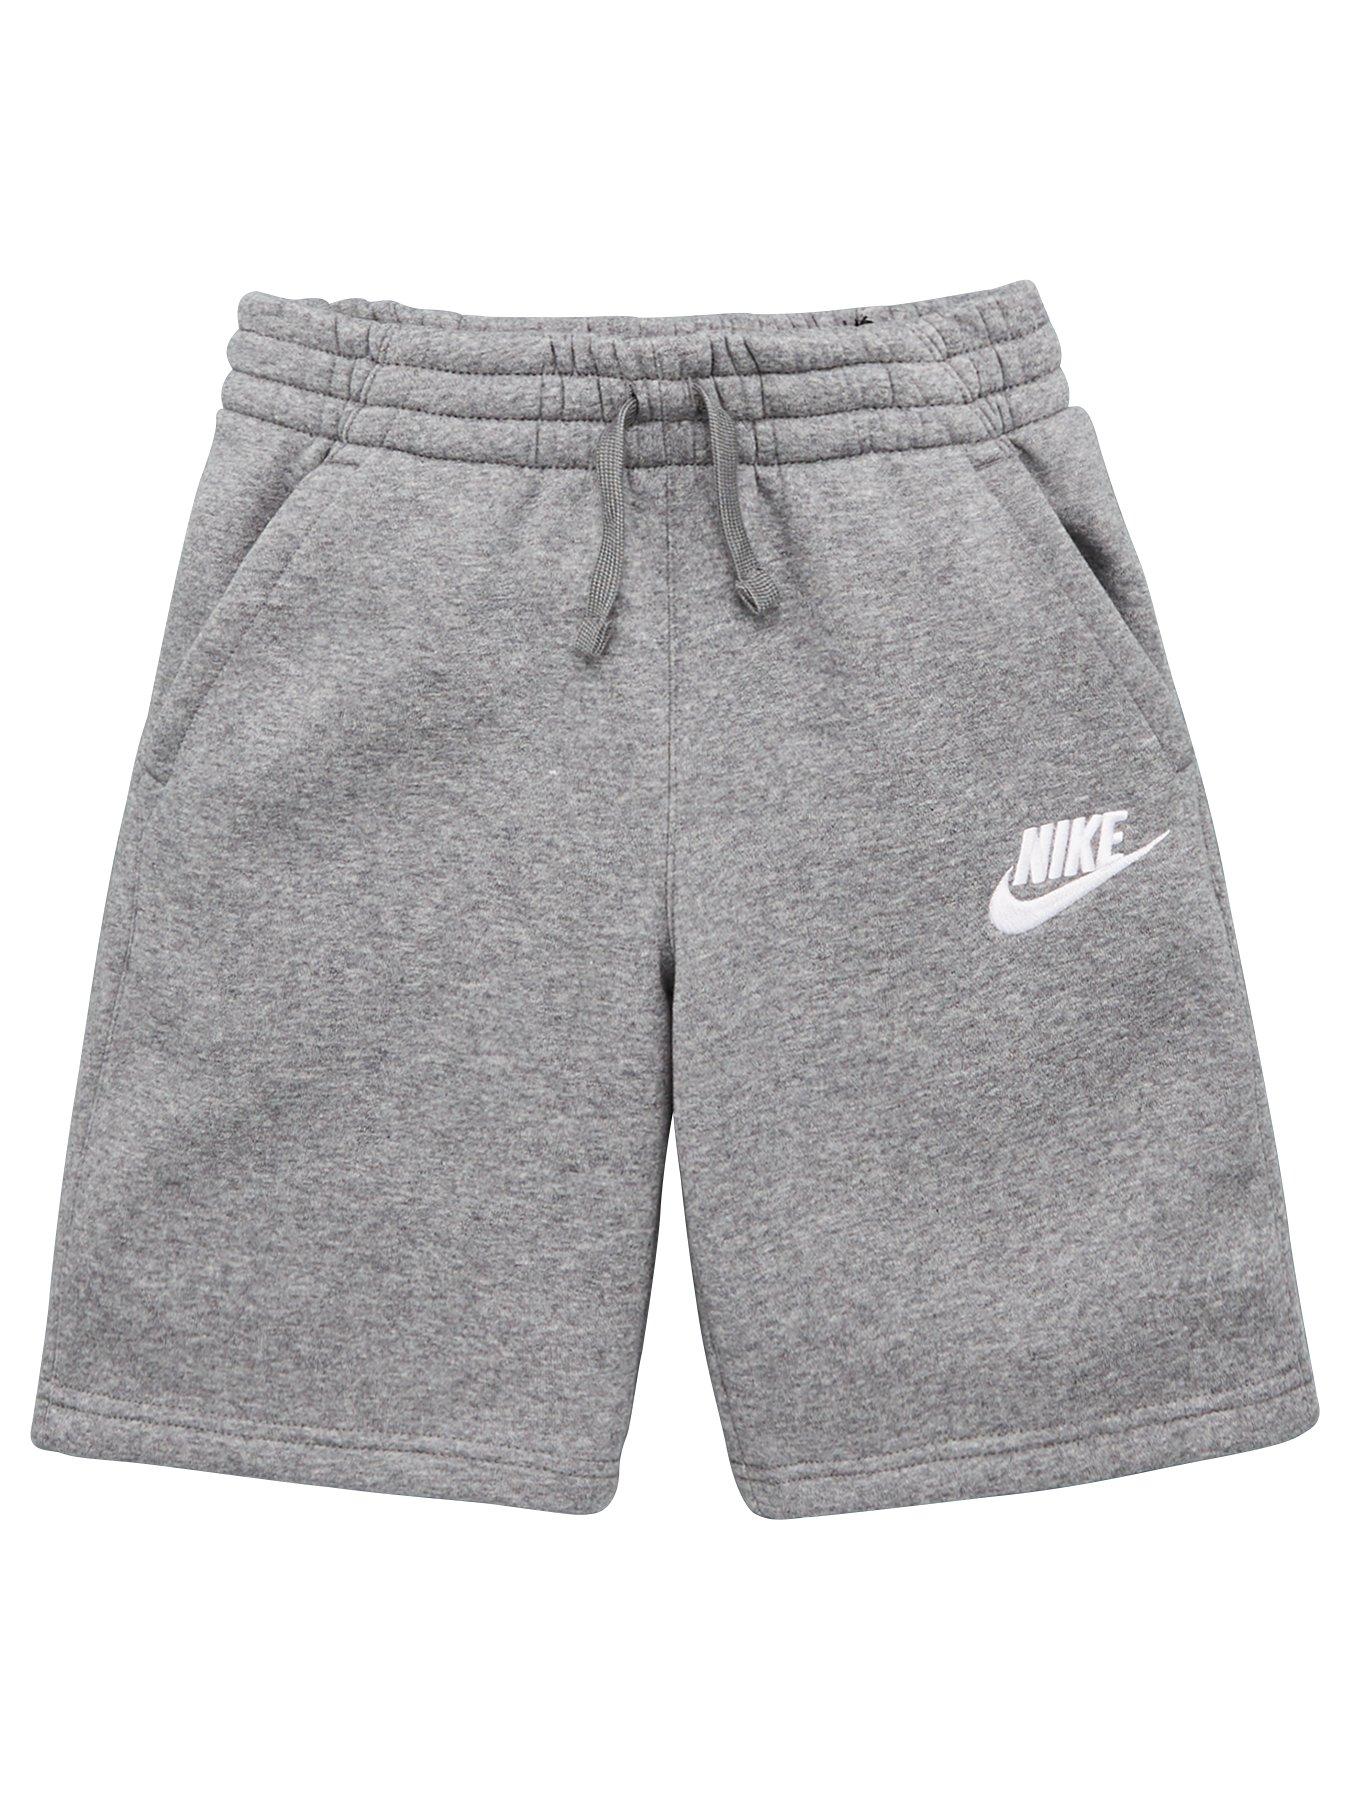 nike grey boy shorts